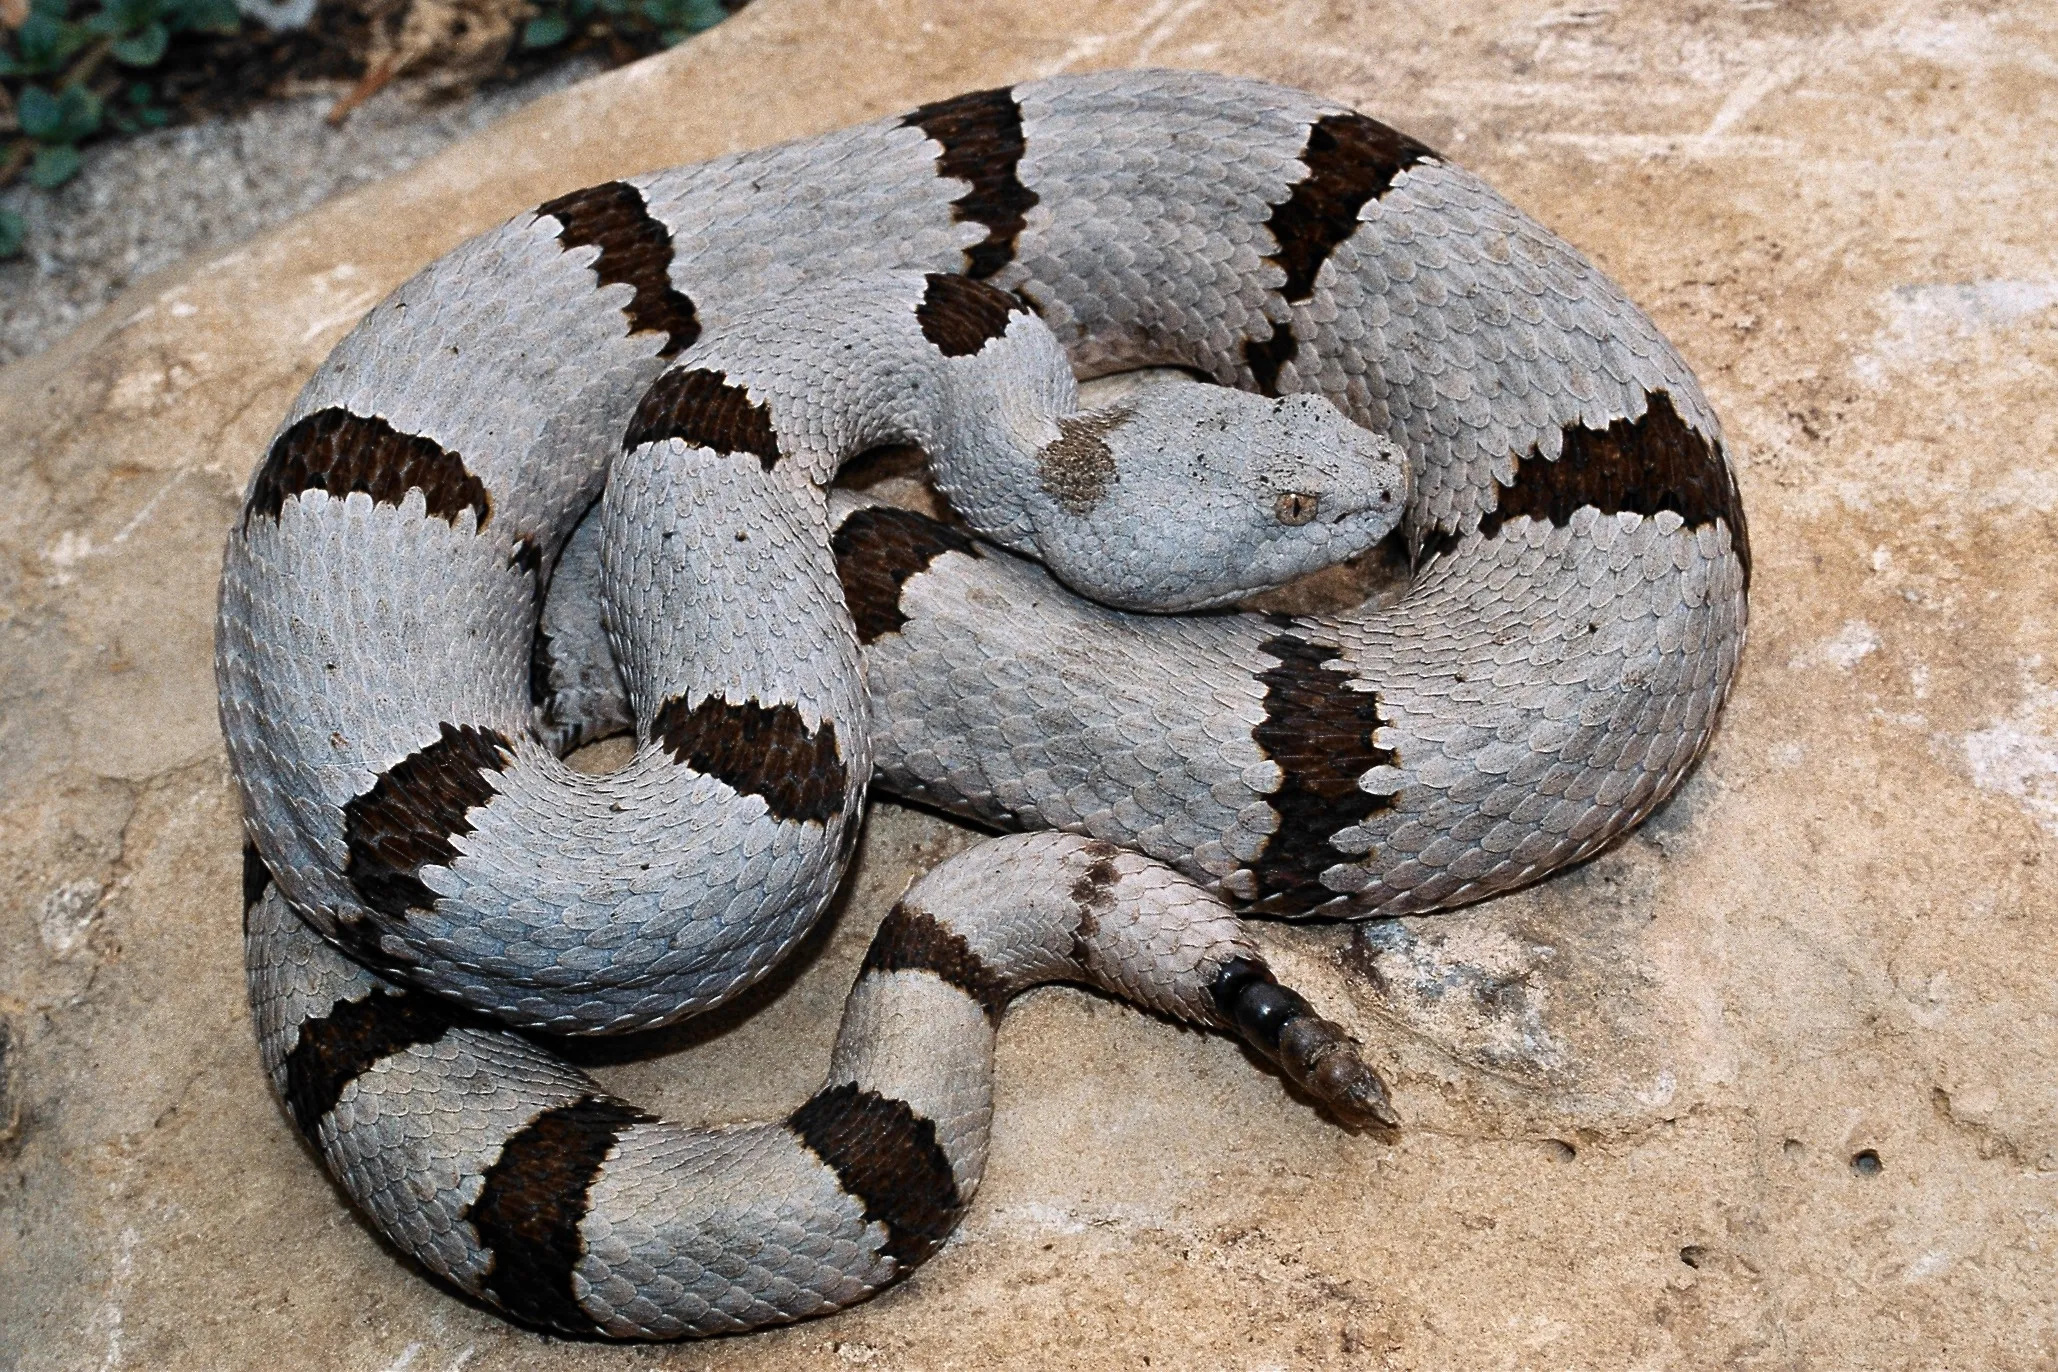 Banded rock rattlesnake, Small but deadly, Texas's hidden gem, Nature's surprise, 2060x1380 HD Desktop